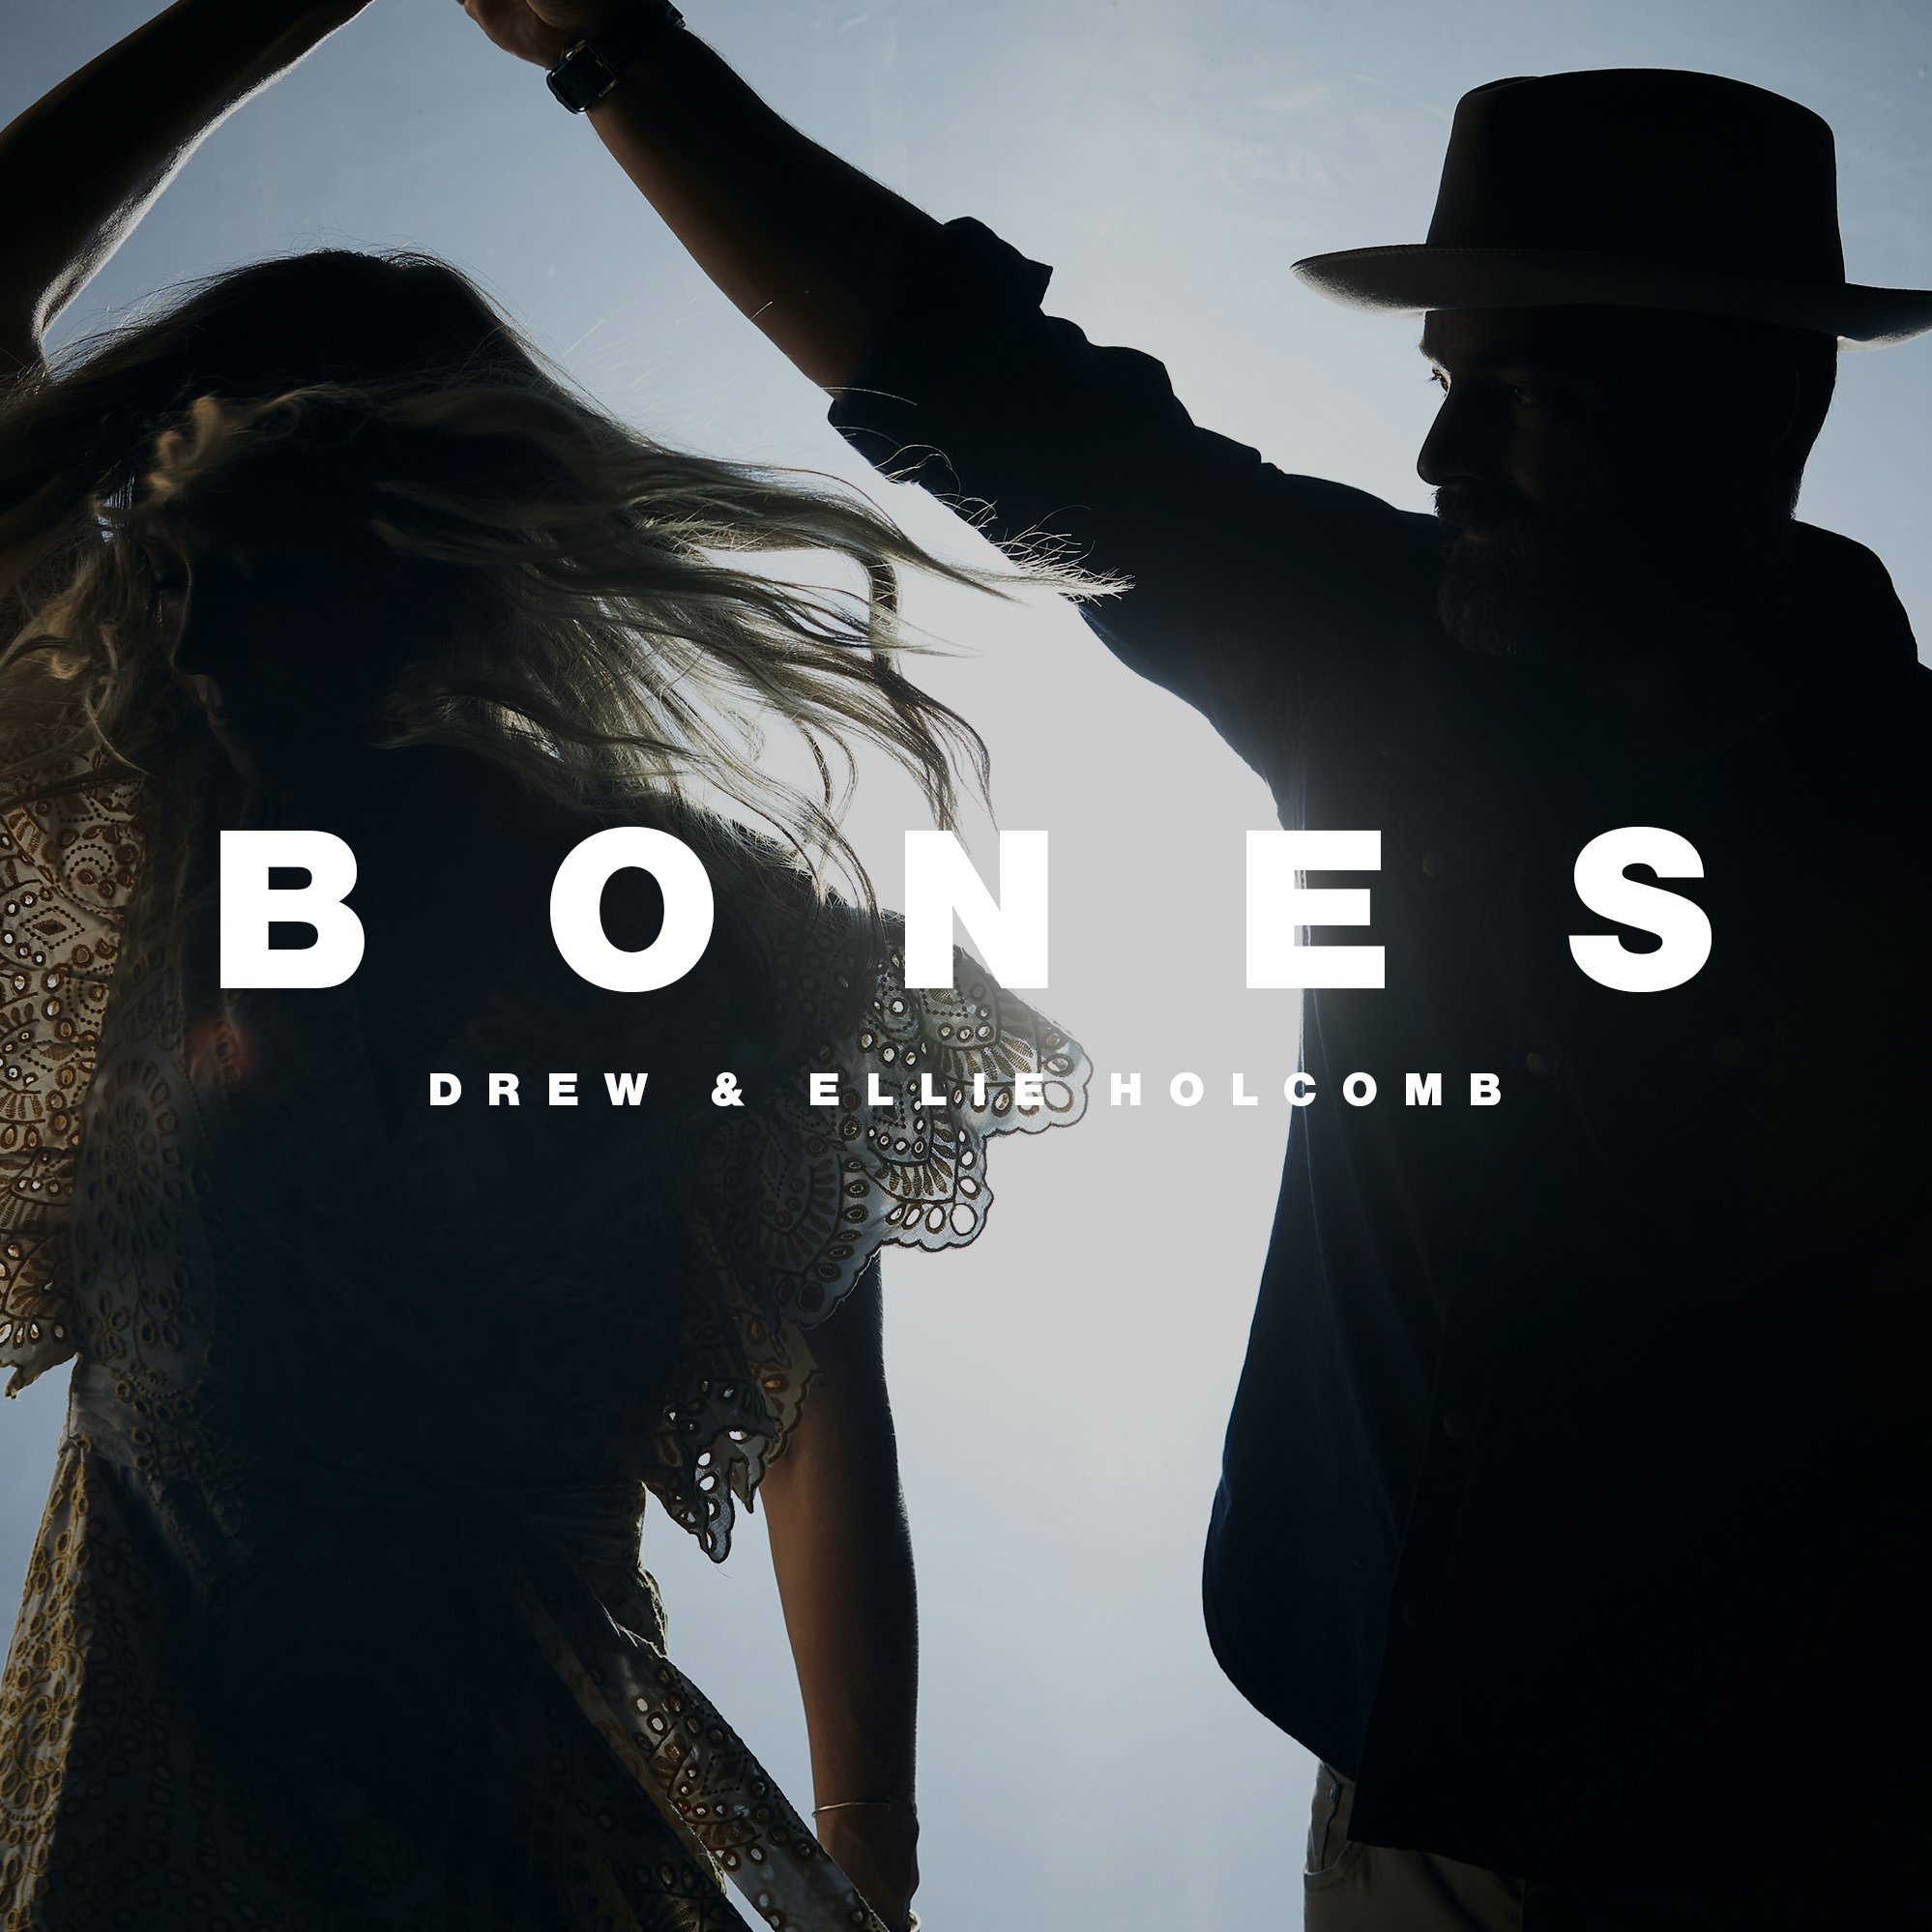 Drew &amp; Ellie Holcomb - "Bones" - Single